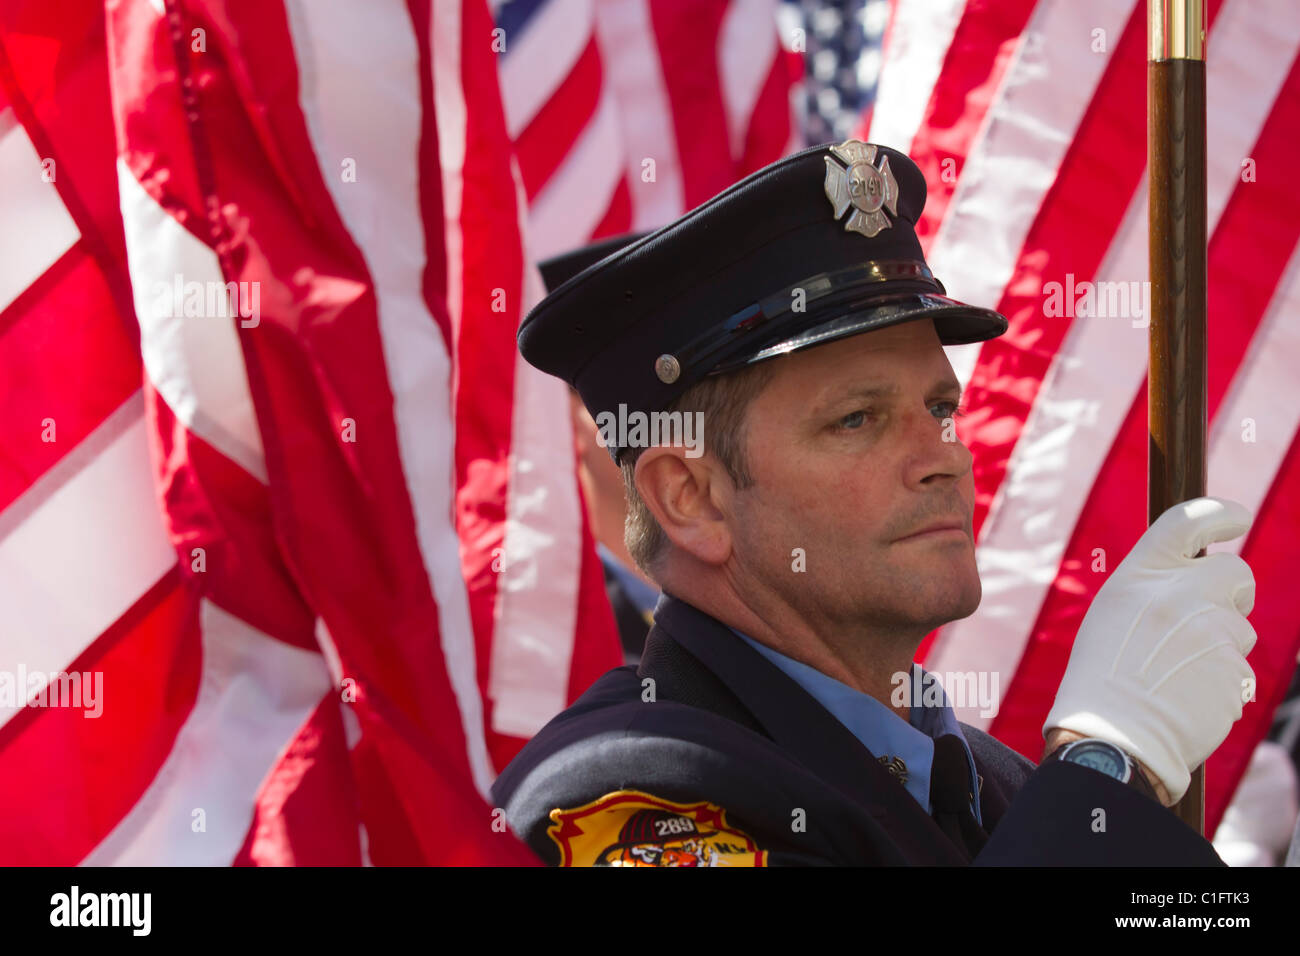 L'honneur des pompiers de 343 Société honorant les pompiers qui ont perdu la vie le 11 septembre 2001 portant un drapeau américain Banque D'Images